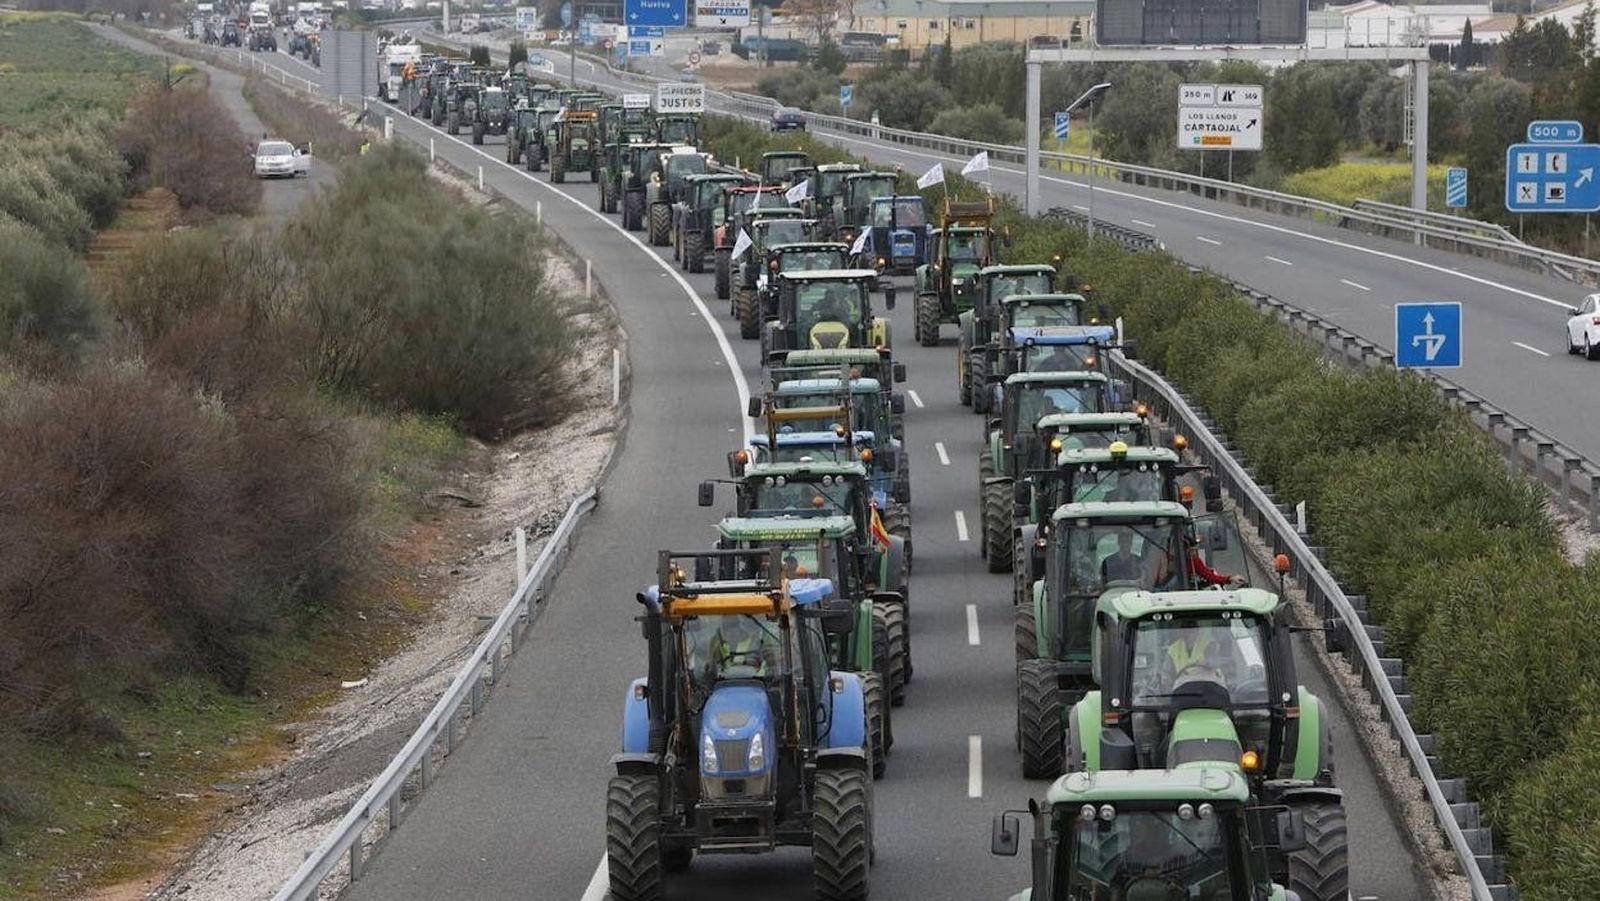 Tractoradas en Granada, protestas en A Coruña y un encierro en Pamplona por el futuro del campo